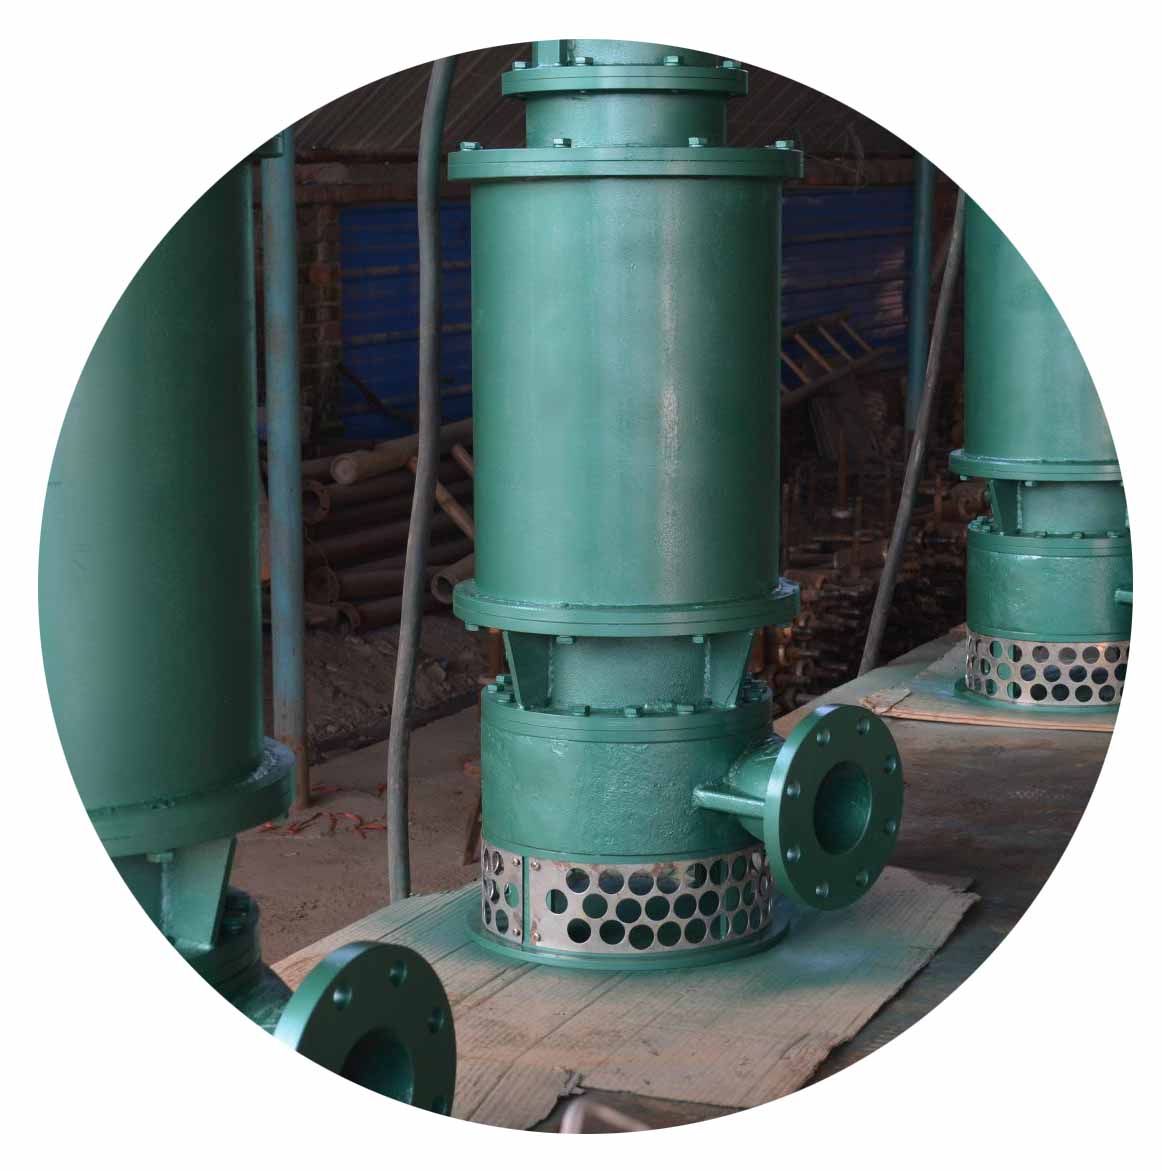 广州某水泵厂产品防锈使用VPCI-377水性防锈剂